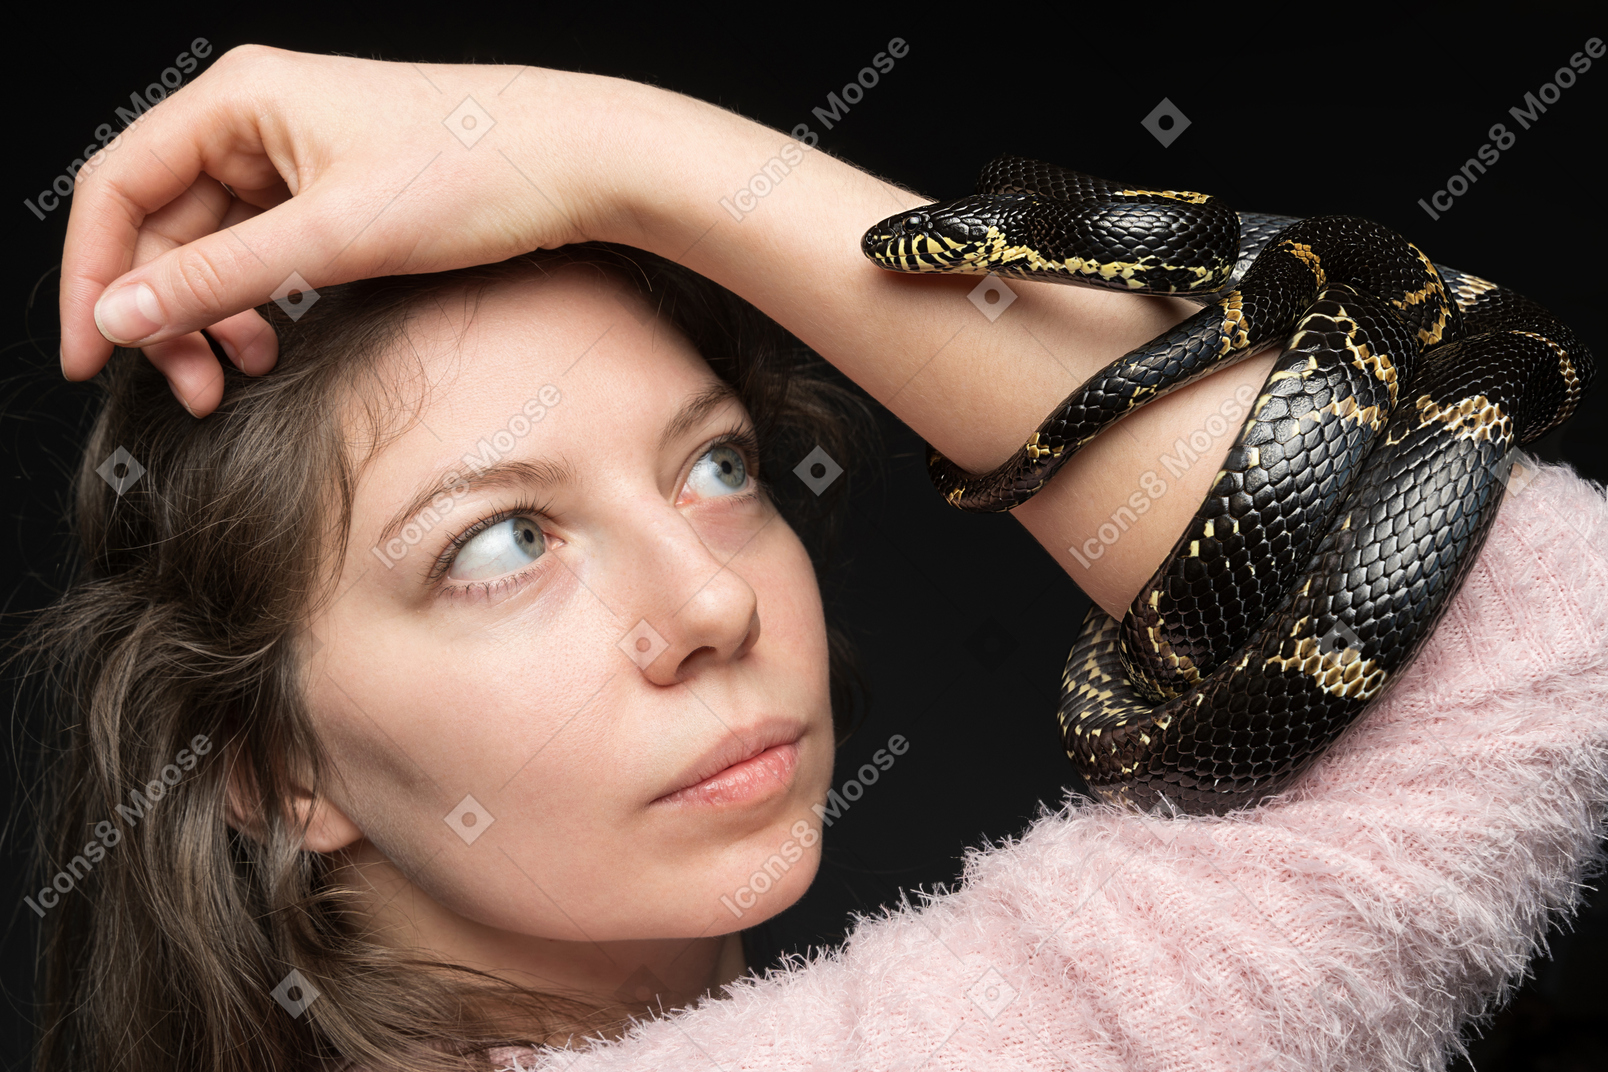 Serpiente negra a rayas que se curva alrededor de la mano de la mujer